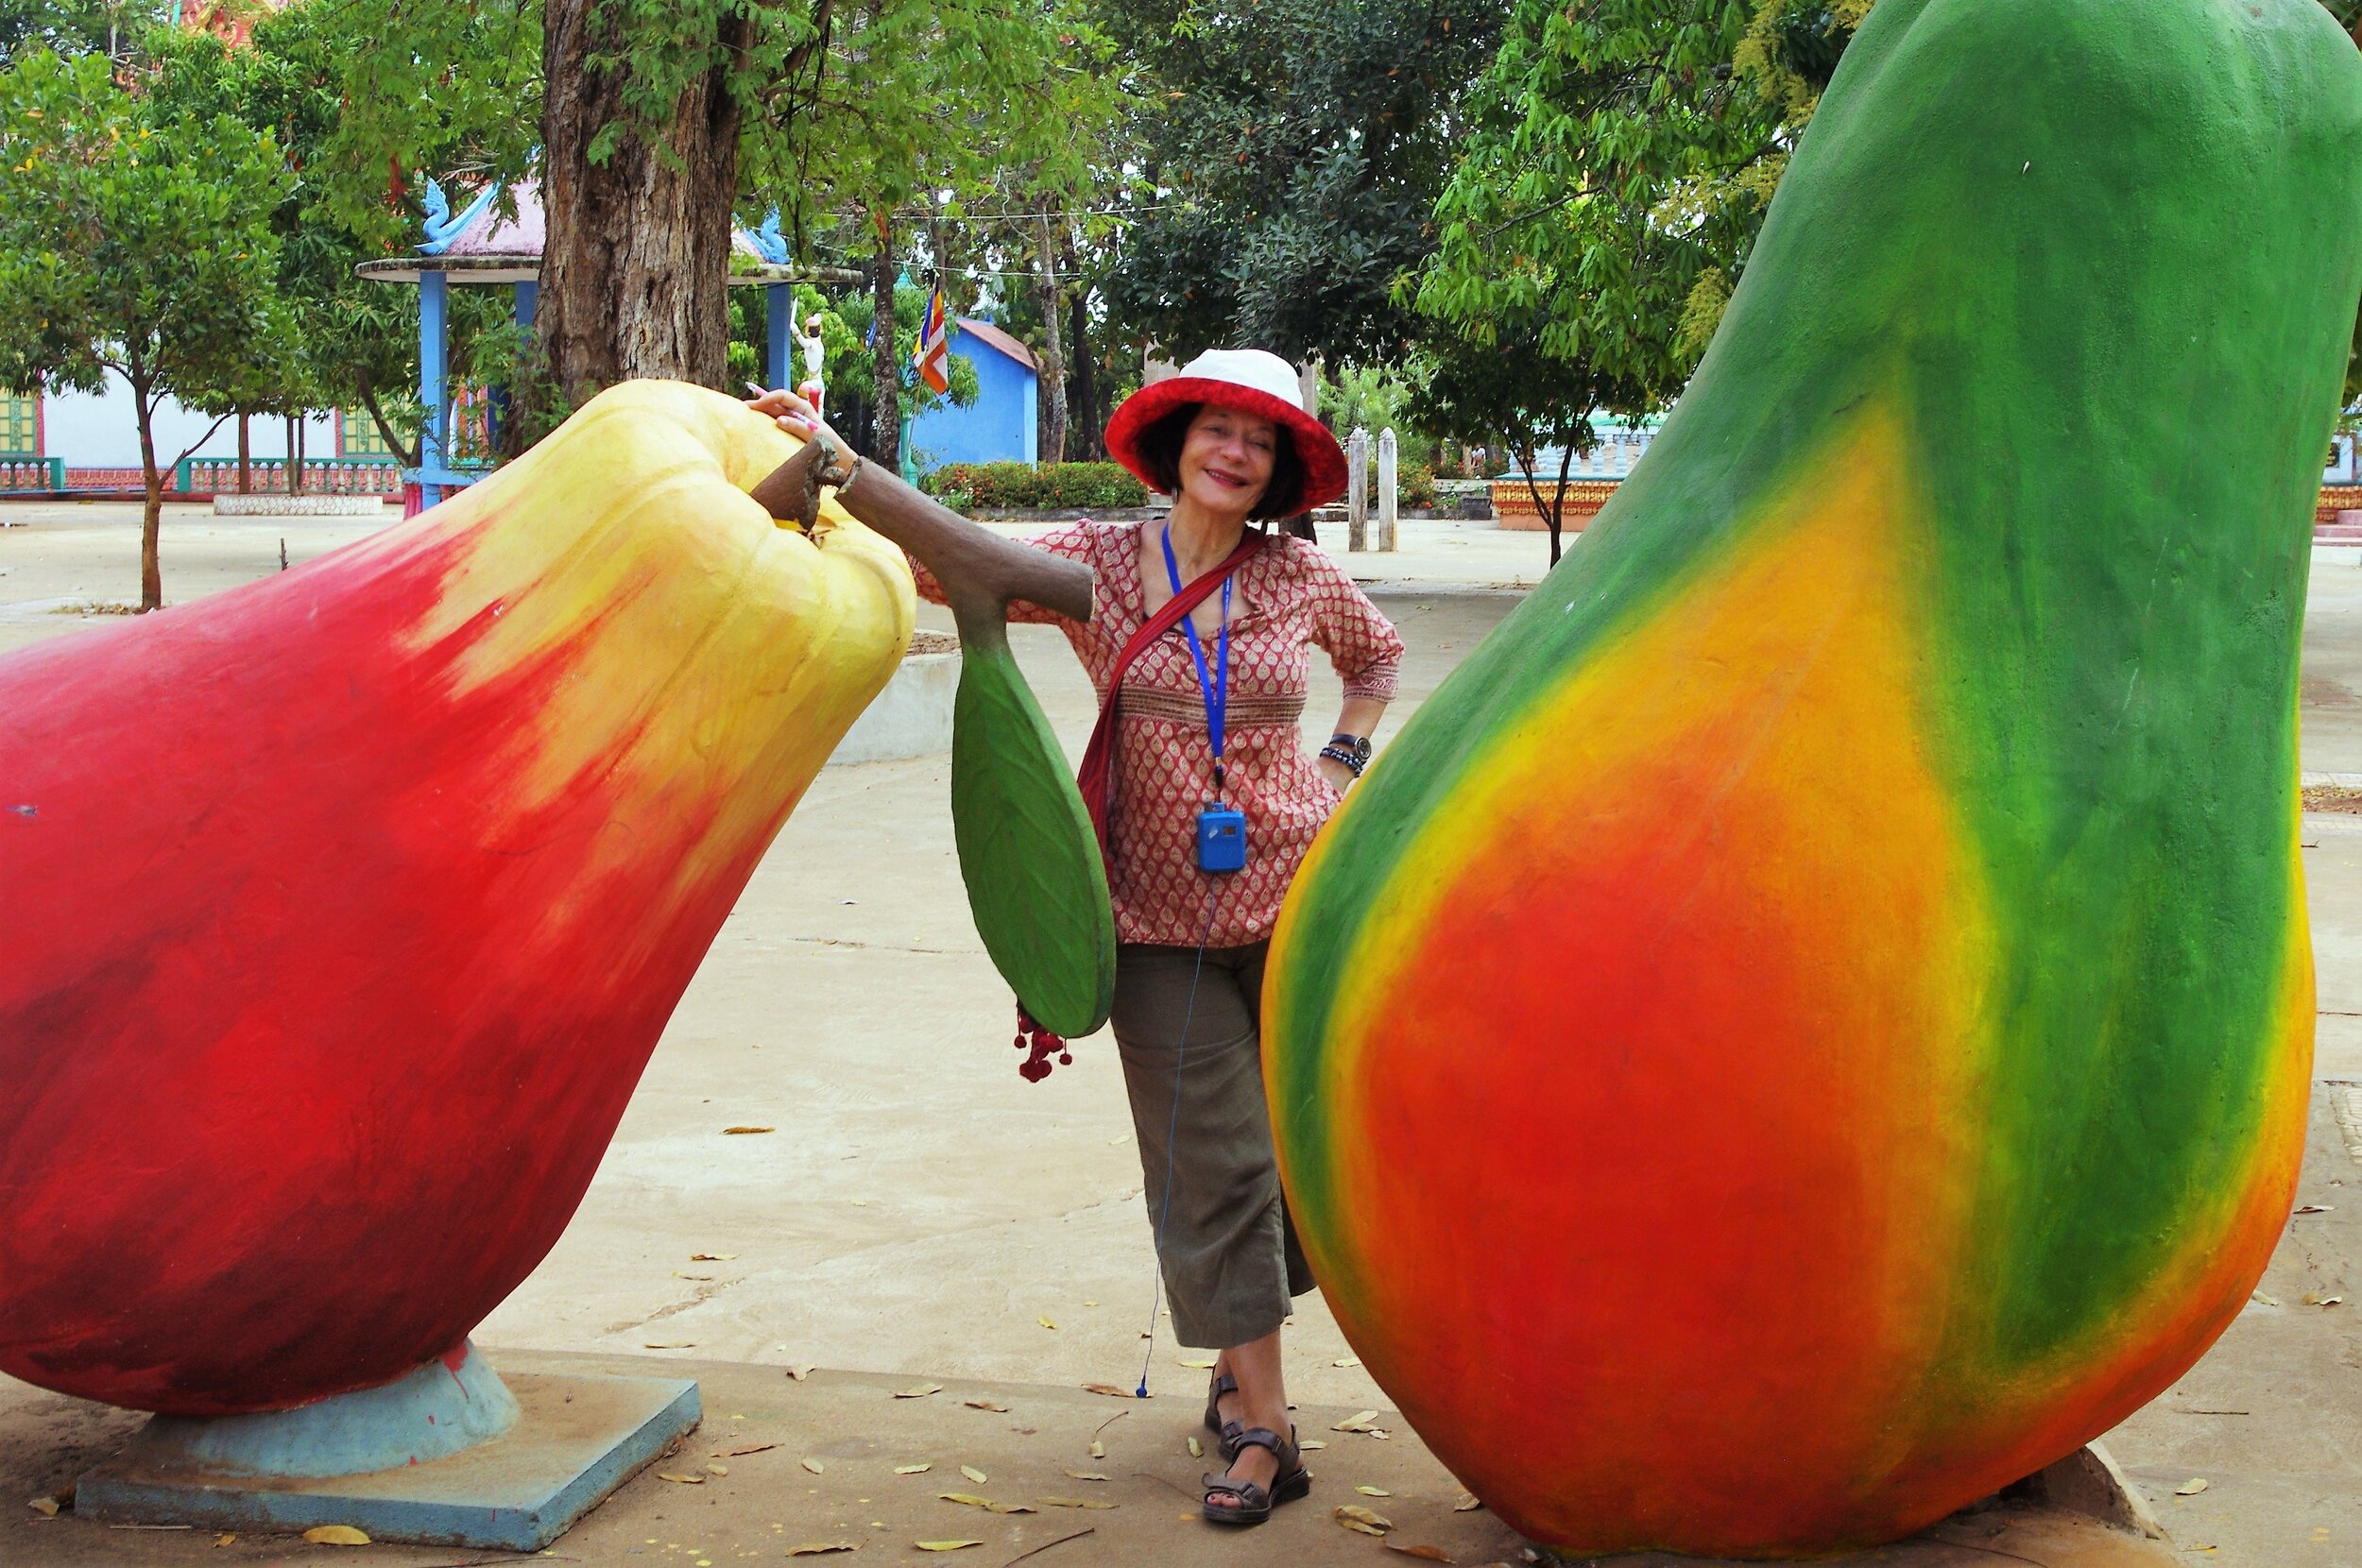 Nancy and giant fruit in Cambodia.jpg